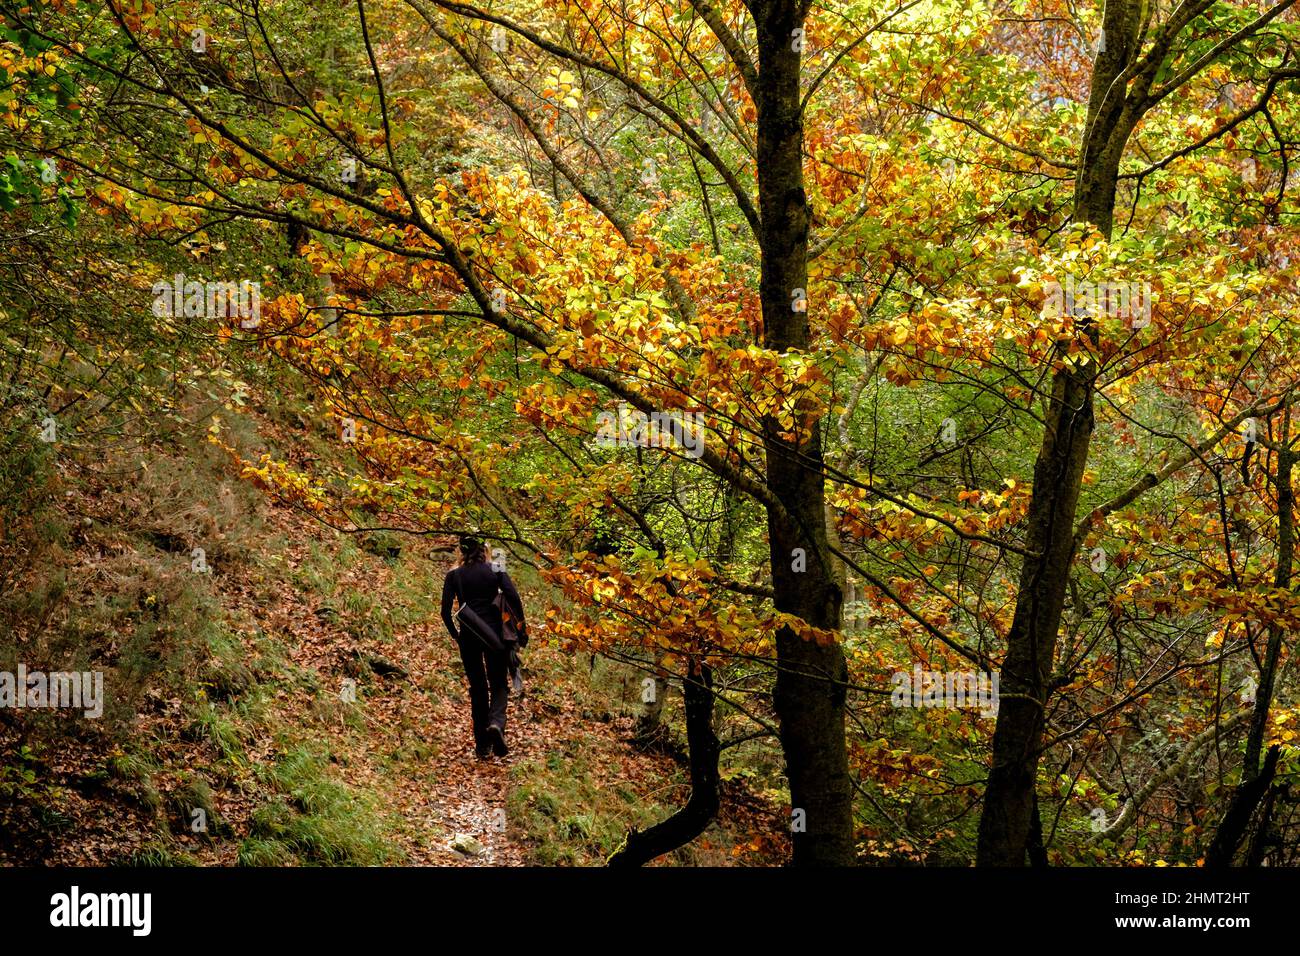 bosque de Archibú, Parque natural de los Valles Occidentales, Huesca, cordillera de los pirineos, Spain, Europe Stock Photo